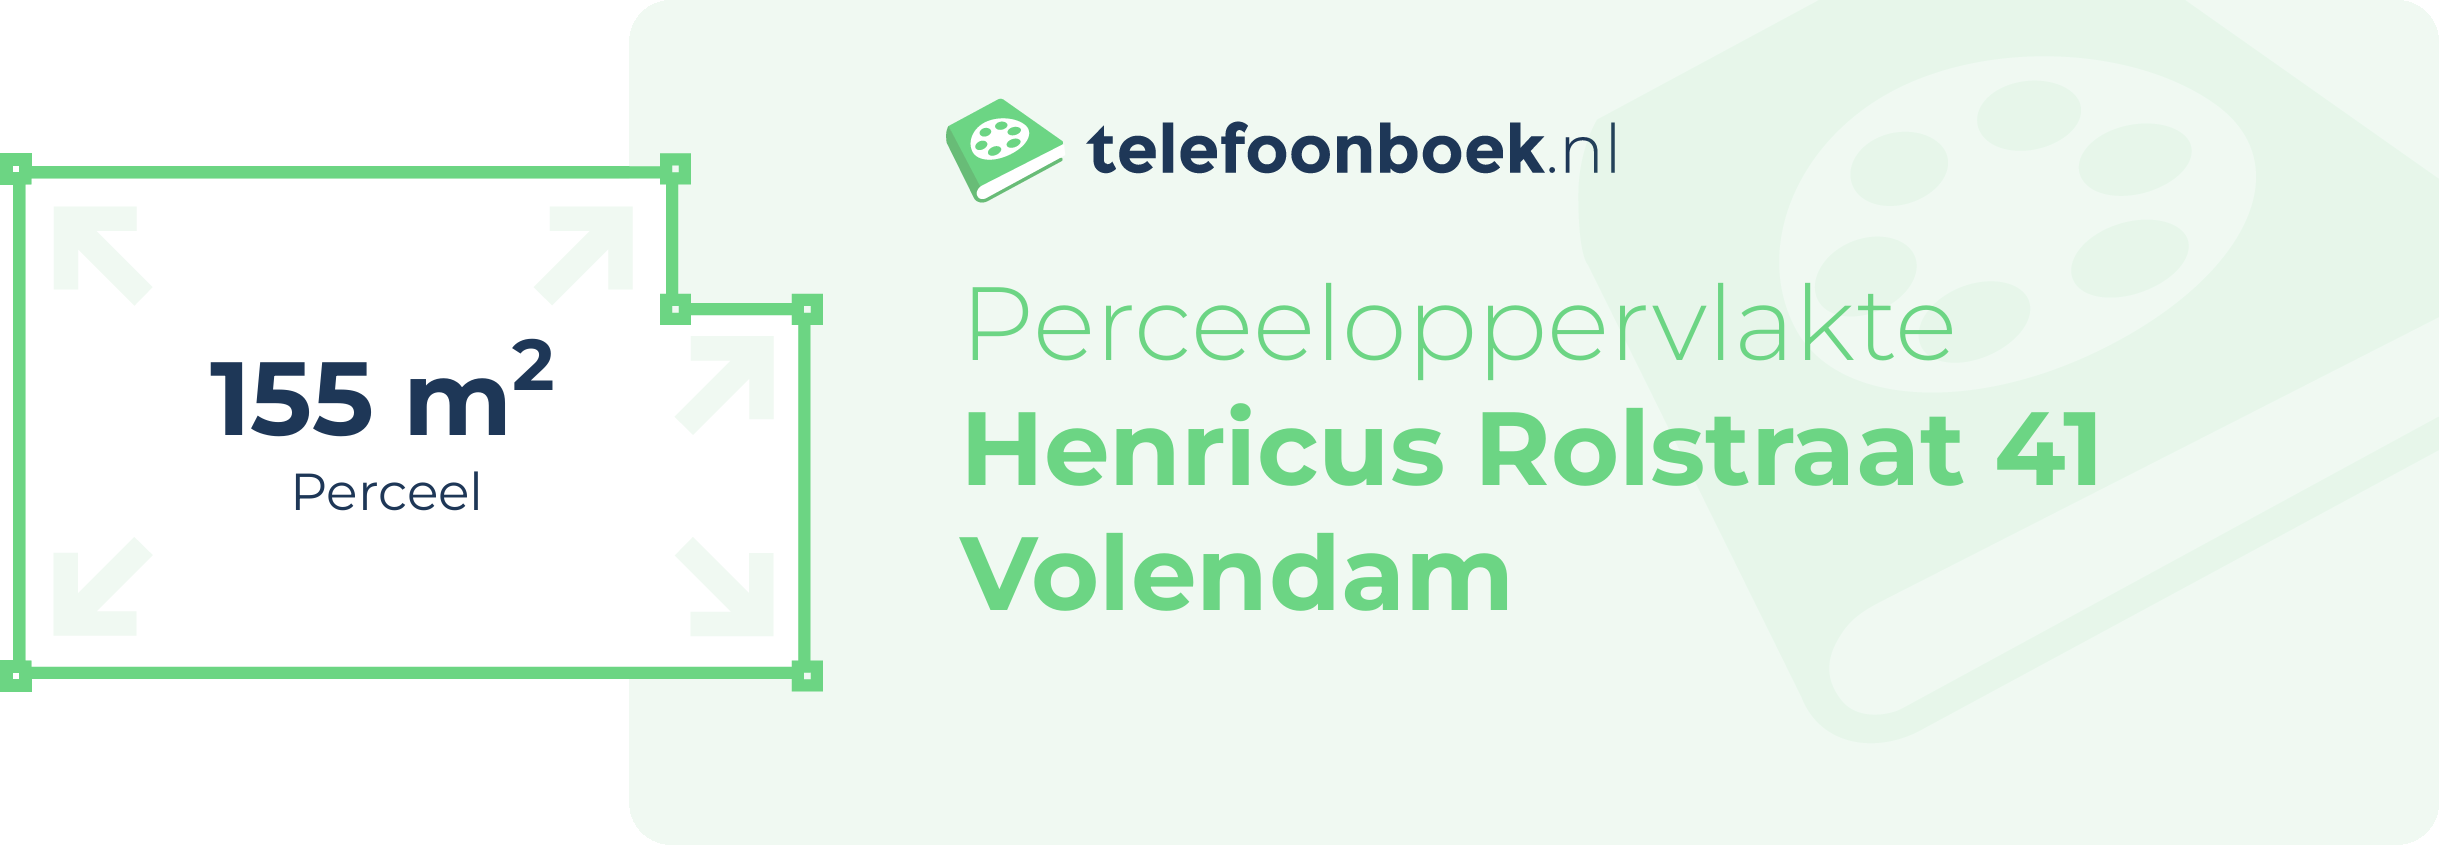 Perceeloppervlakte Henricus Rolstraat 41 Volendam